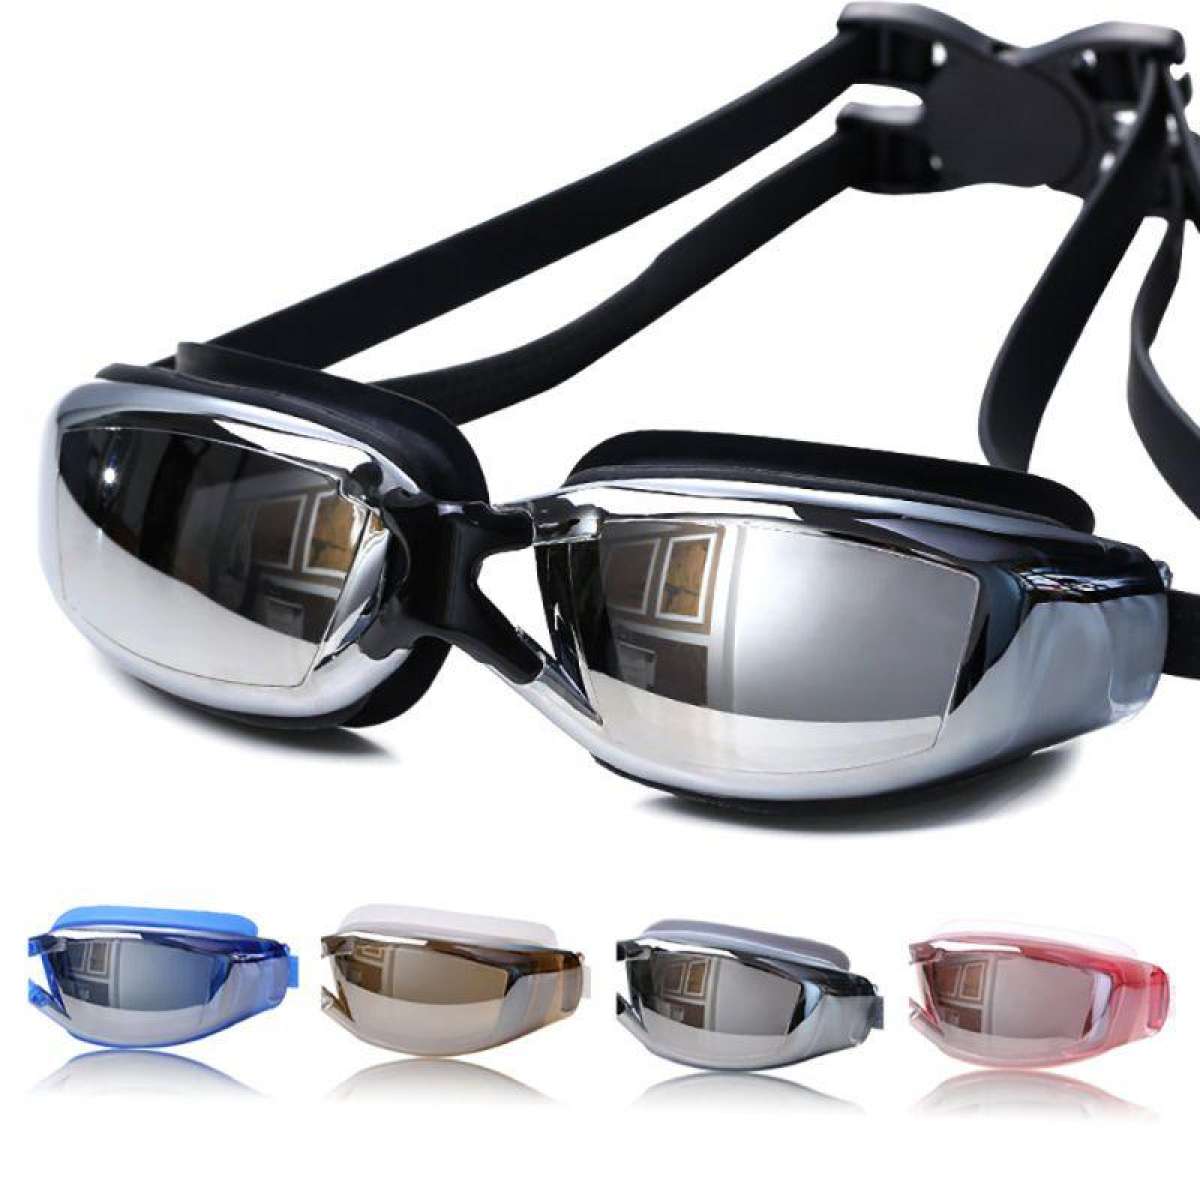 แว่นตาว่ายน้ำ แว่นตาดำน้ำ แว่นตากันหมอก กันแสง UV สำหรับว่ายน้ำ + คลิปหนีบจมูก + ที่อุดหู